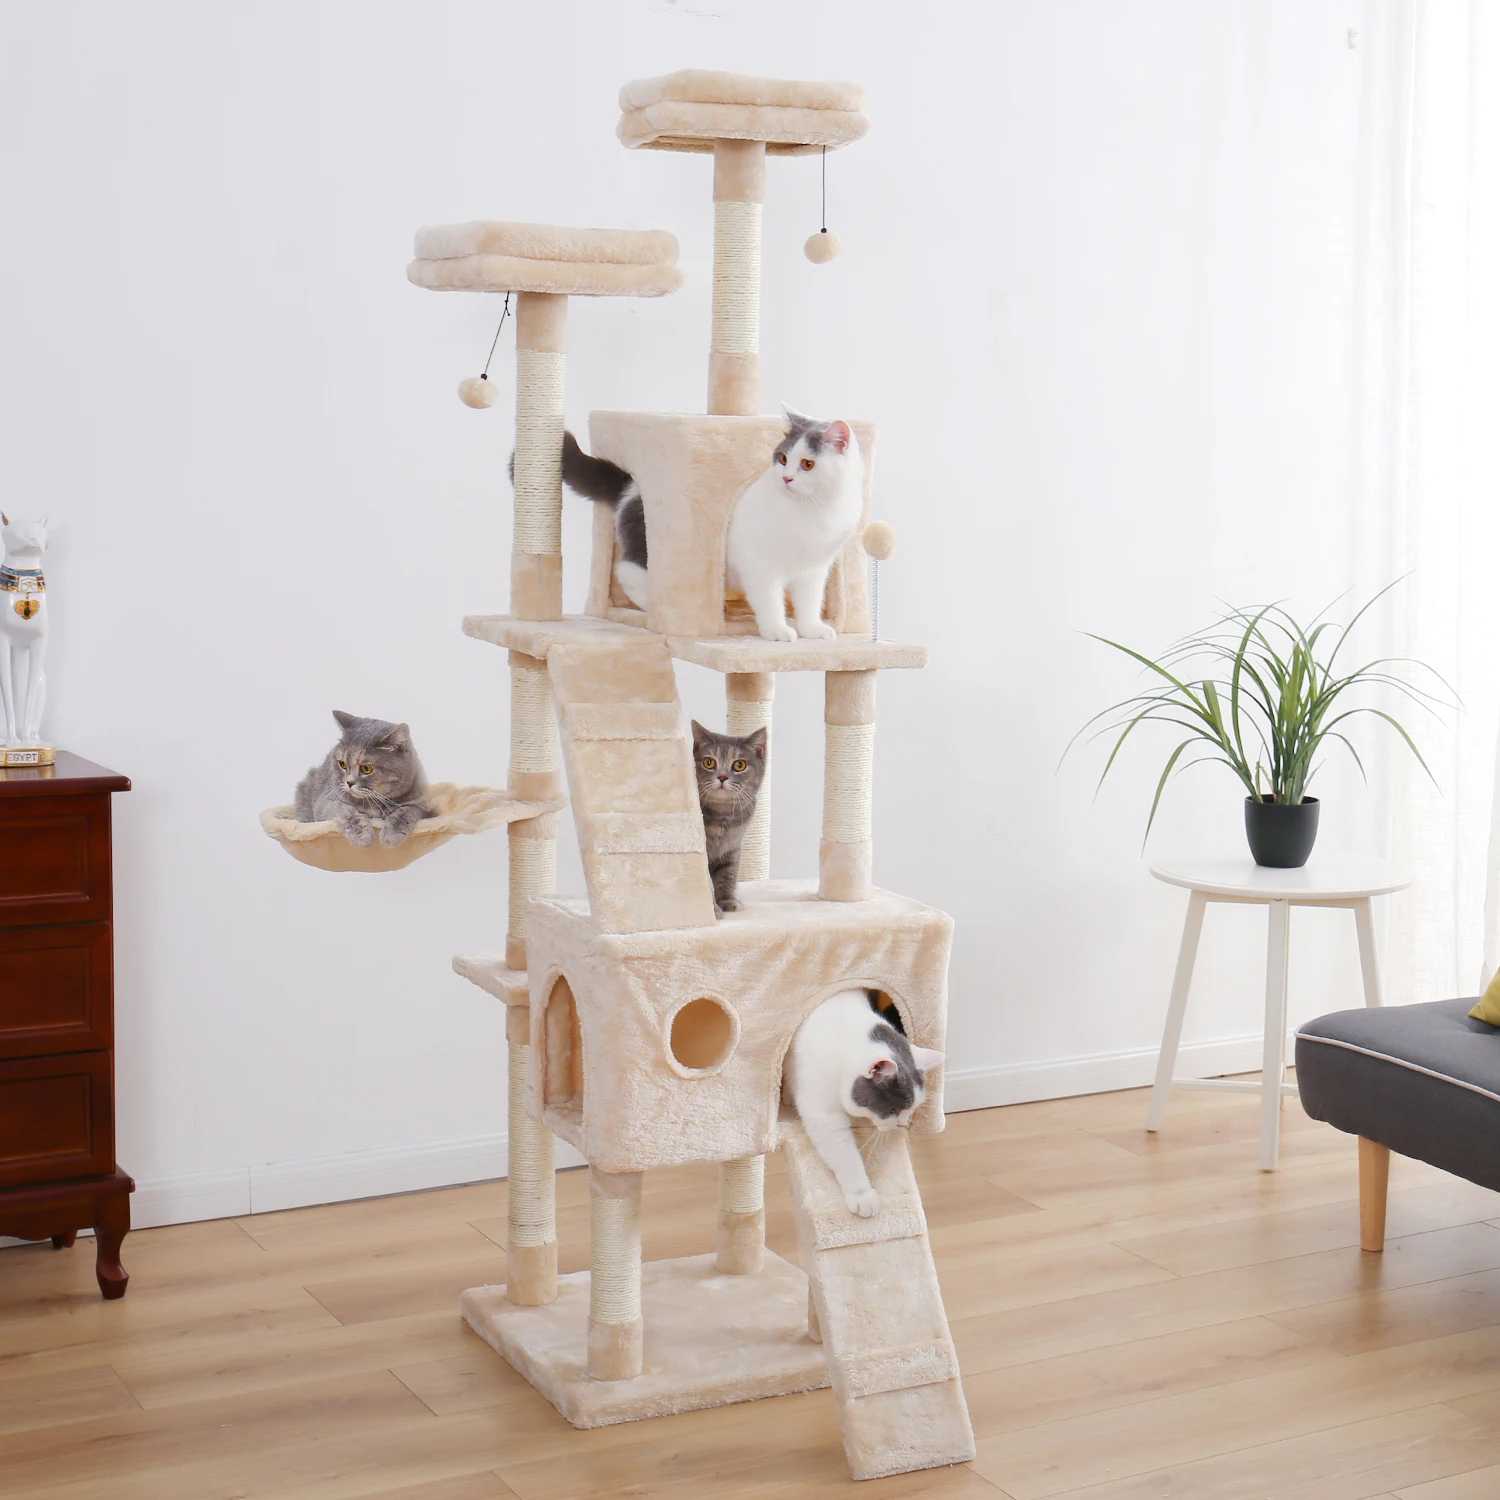 Домашняя Дерево скалолазание дерево кошка прыгающая игрушка веселые когтеточки Твердые кошки скалолазание рамки продукты принадлежности для питомцев